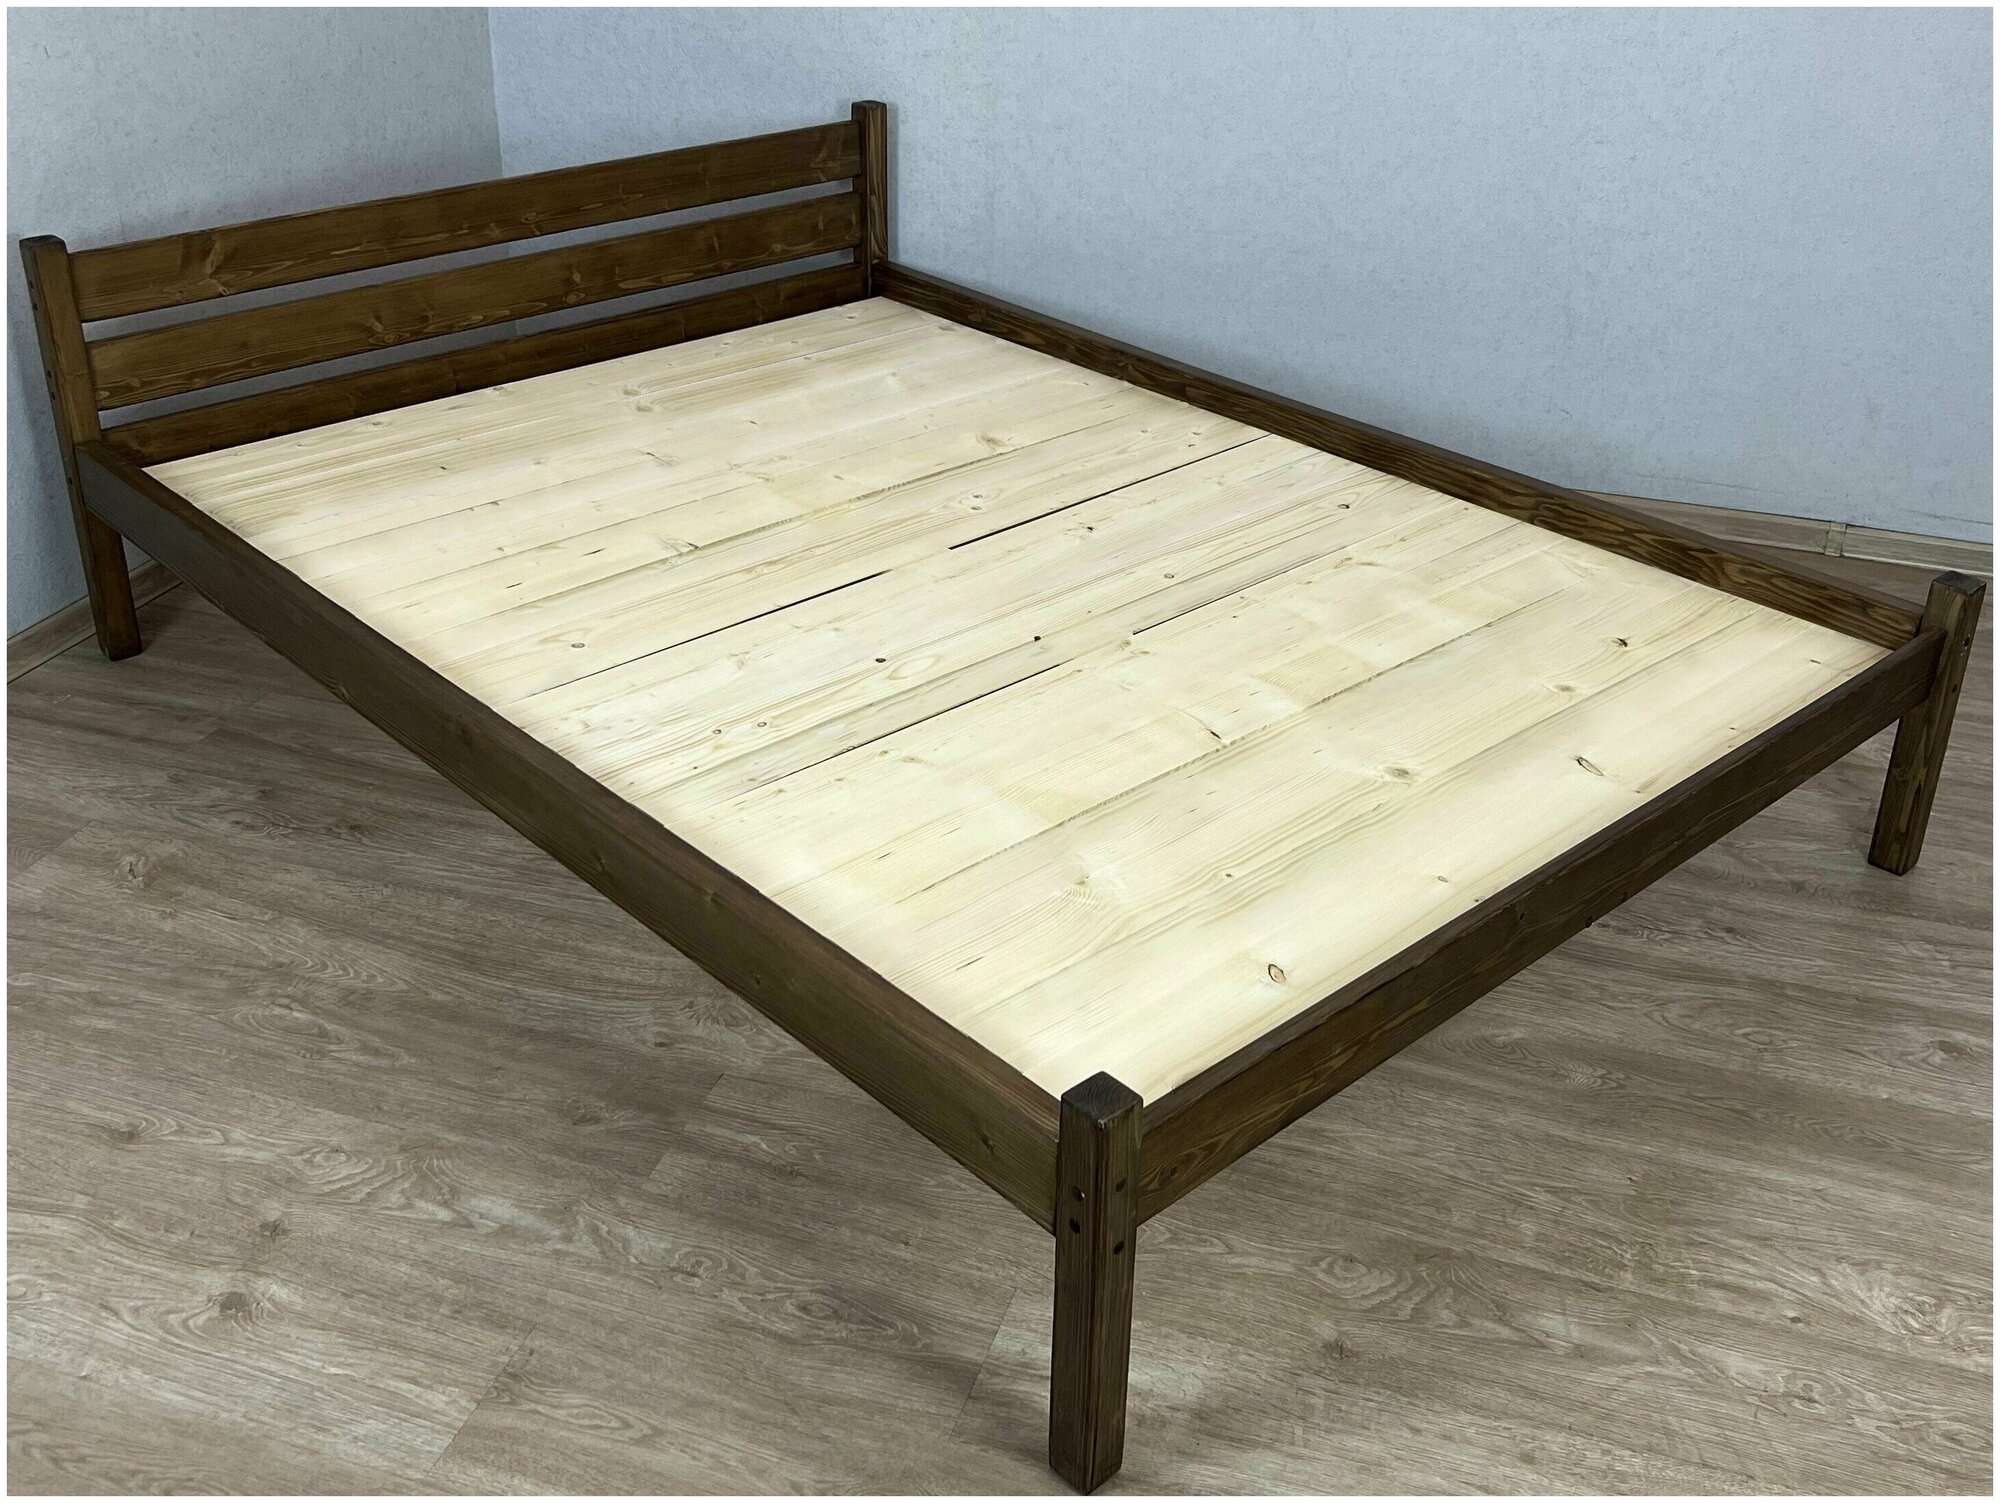 Кровать двуспальная Классика из массива сосны со сплошным основанием, 200х180 см (габариты 210х190), цвет темный дуб